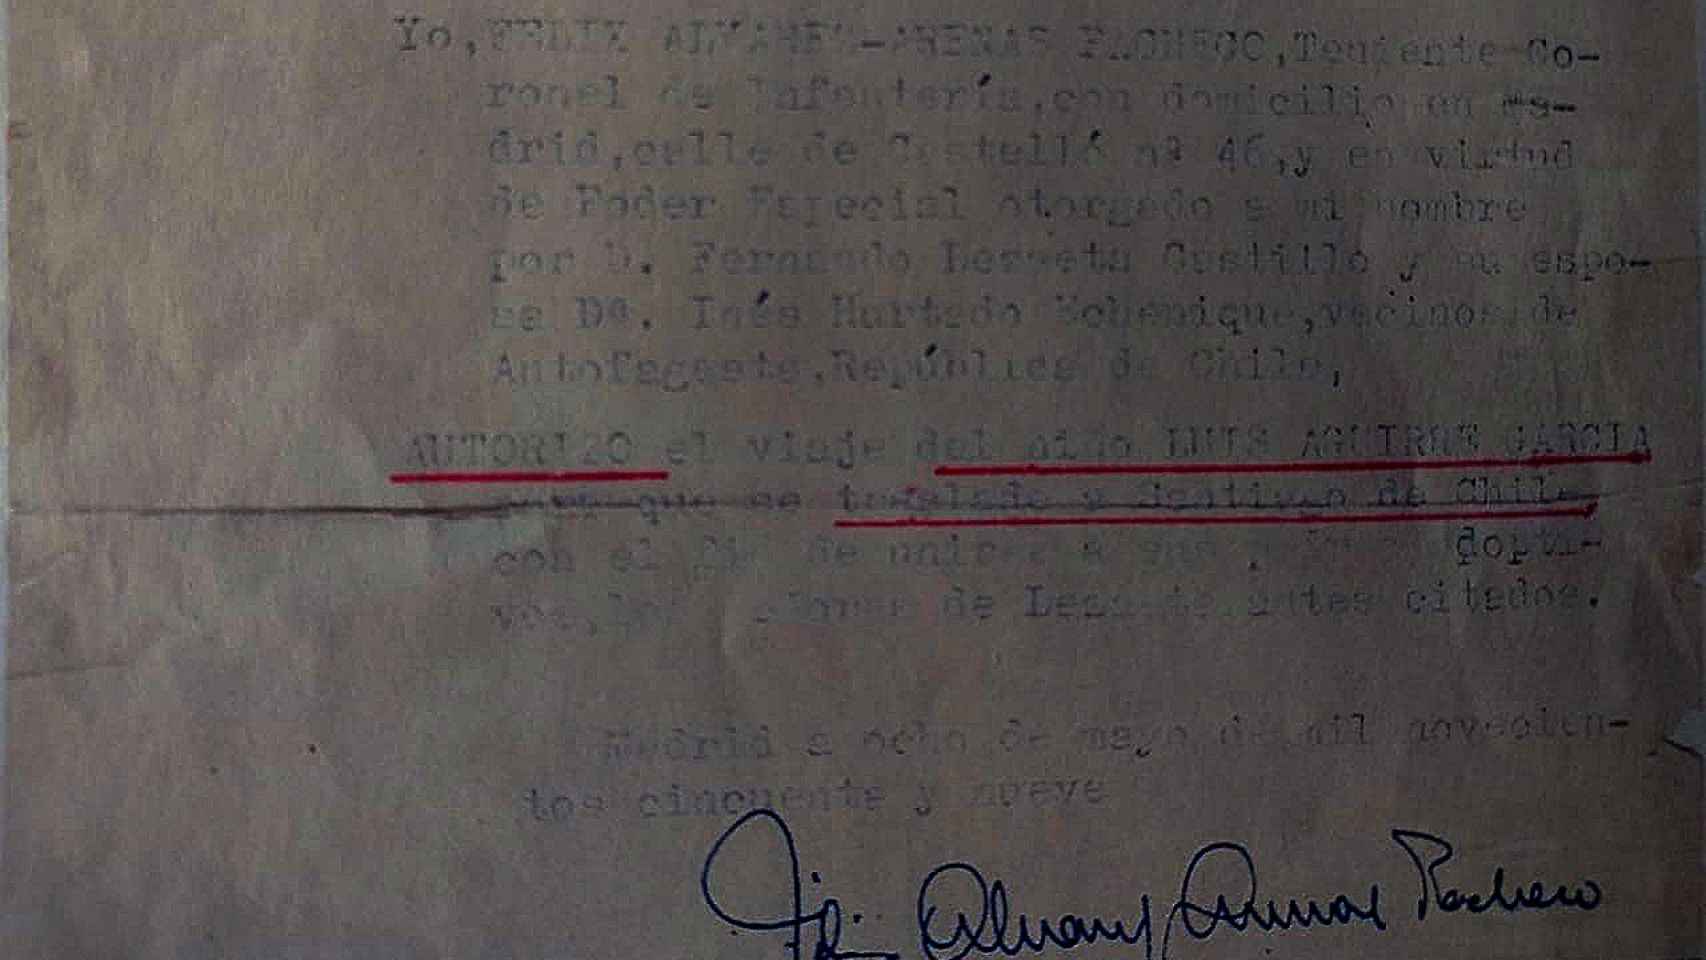 Una de las cartas firmadas por Álvarez-Arenas. En esta, autoriza el viaje de Luis Aguirre a Chile.